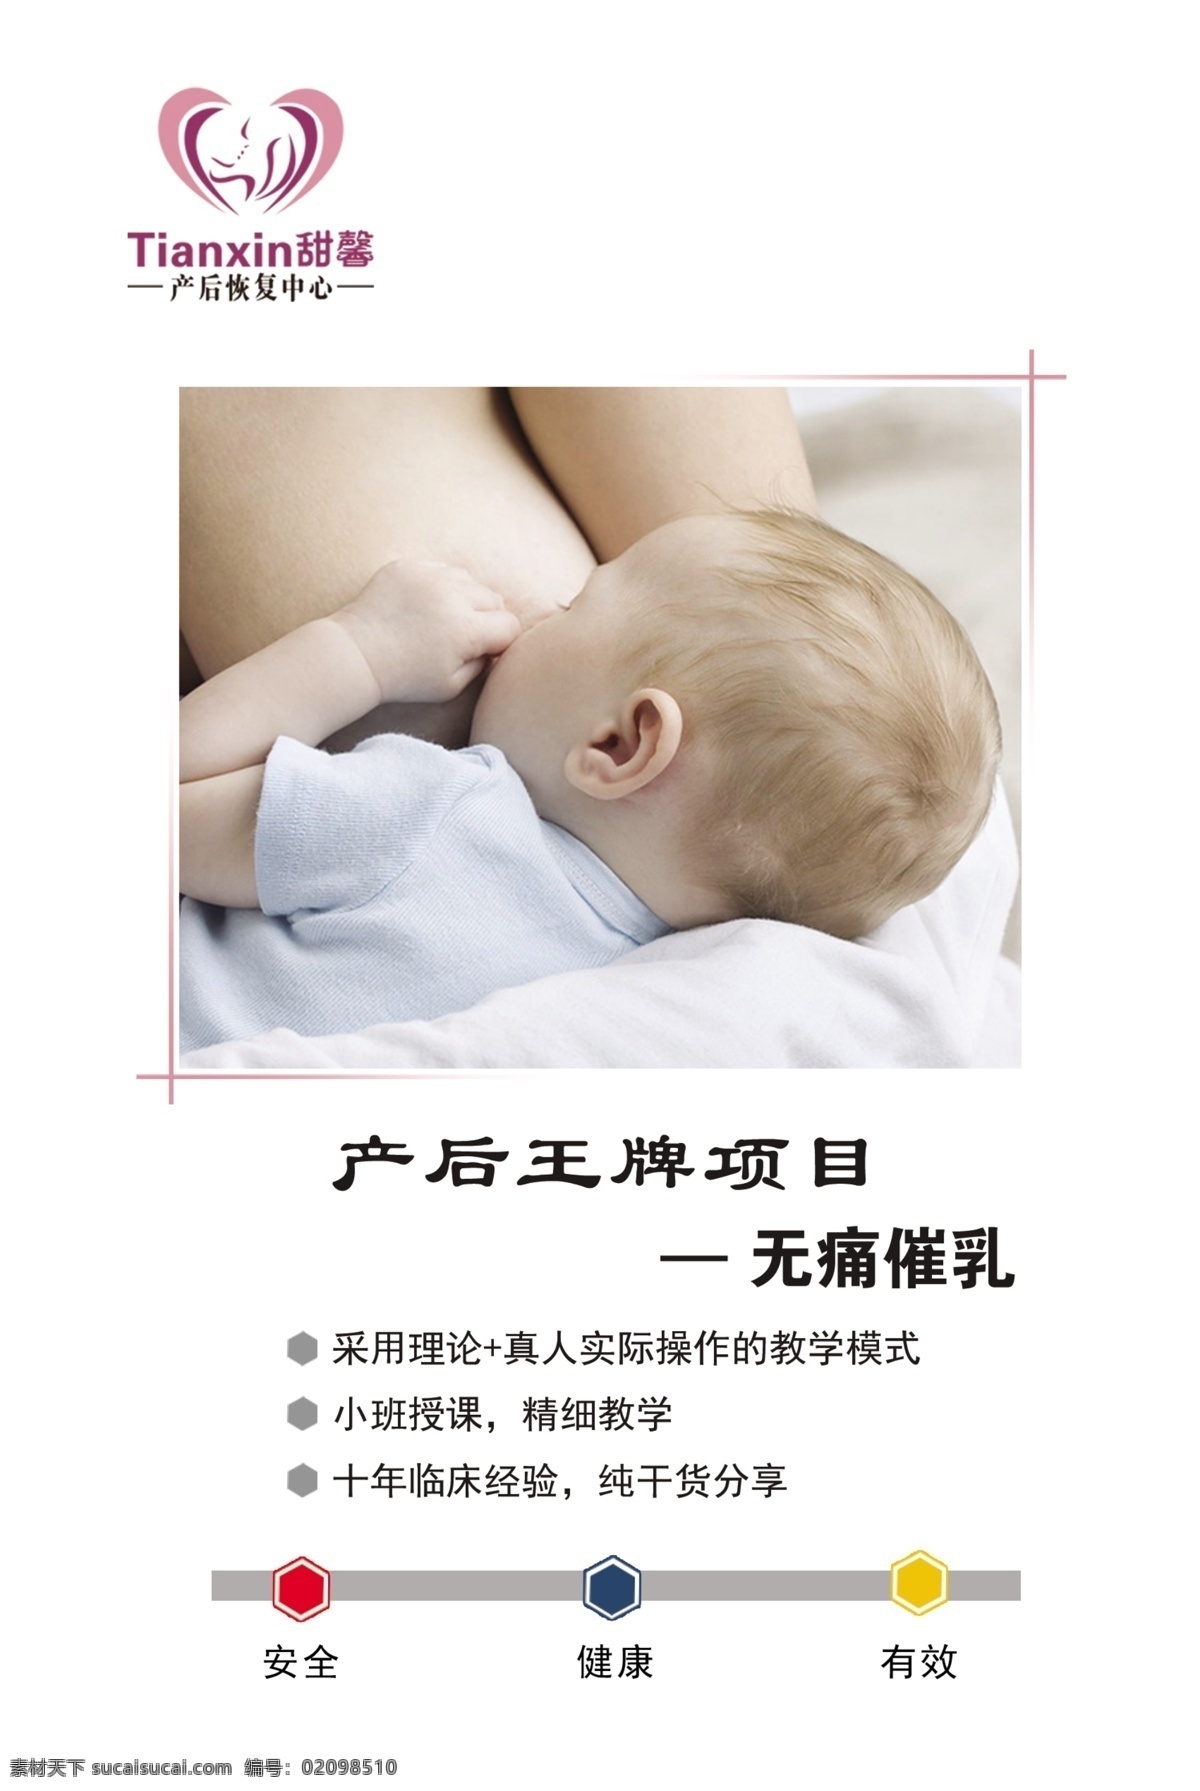 产后催乳 产后 催乳 回乳 孕婴 无痛催乳